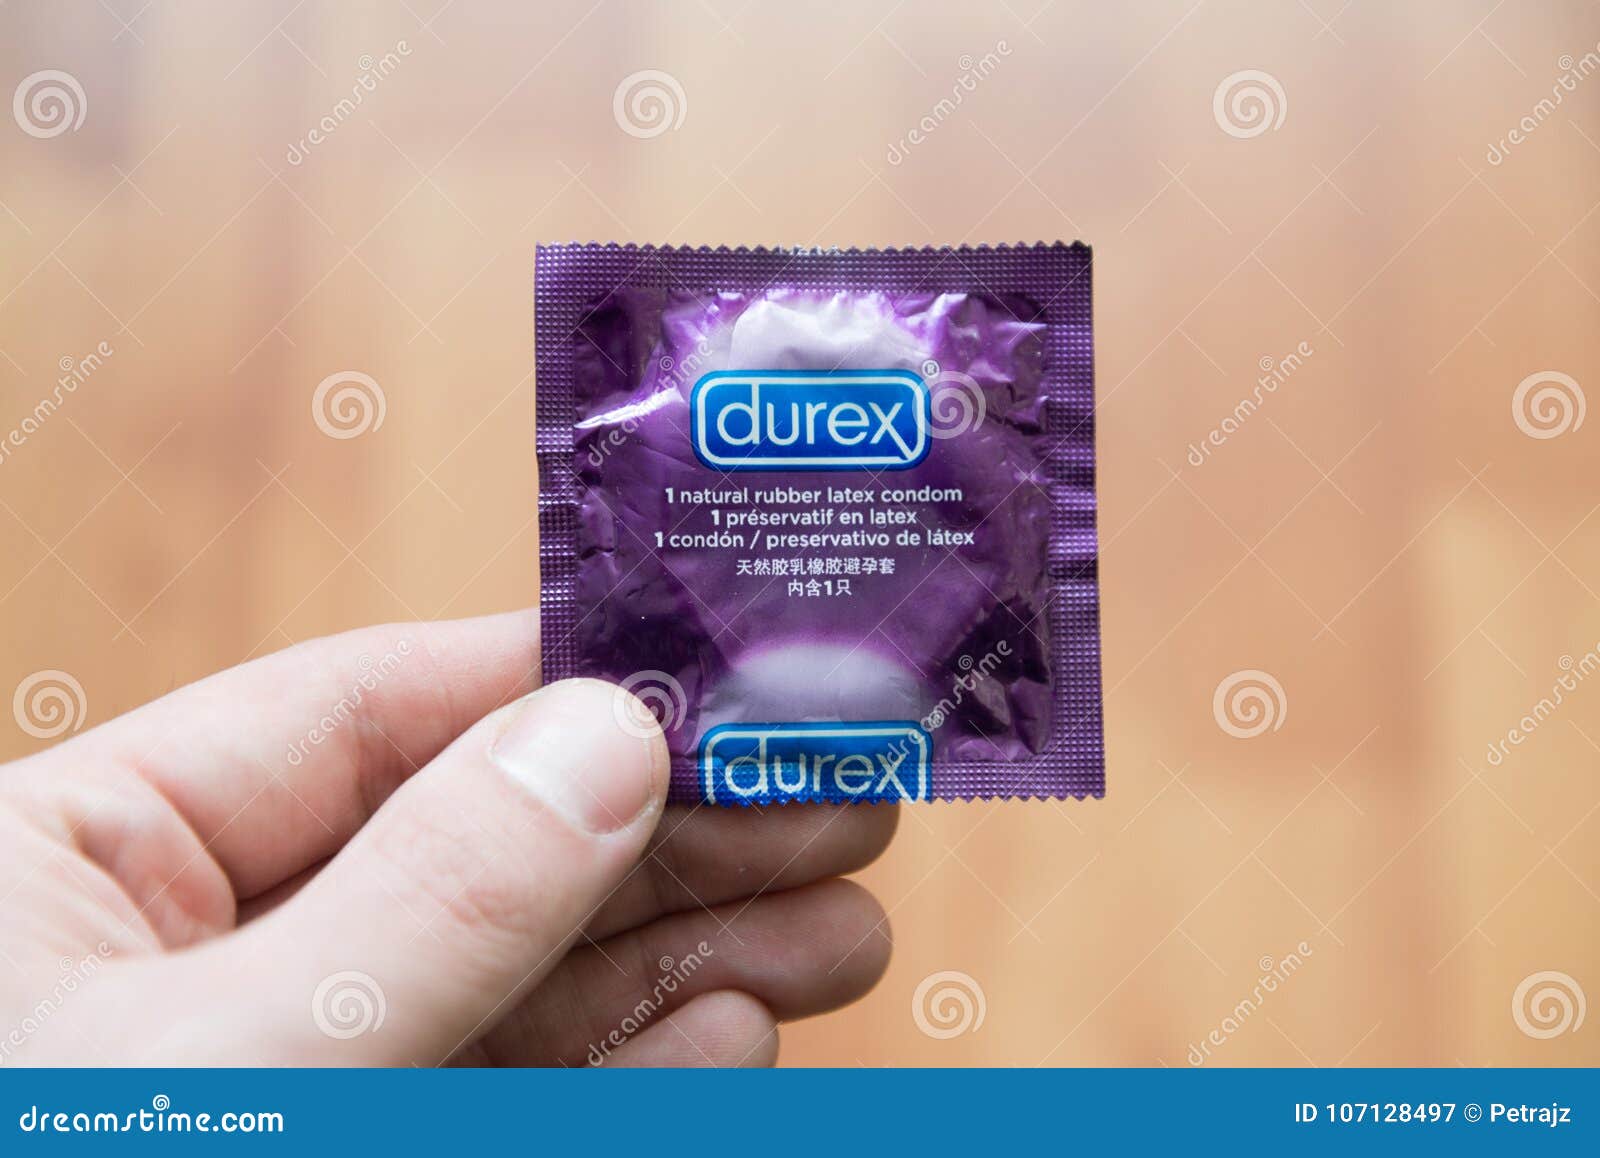 почему мой парень не может кончить с презервативом фото 103